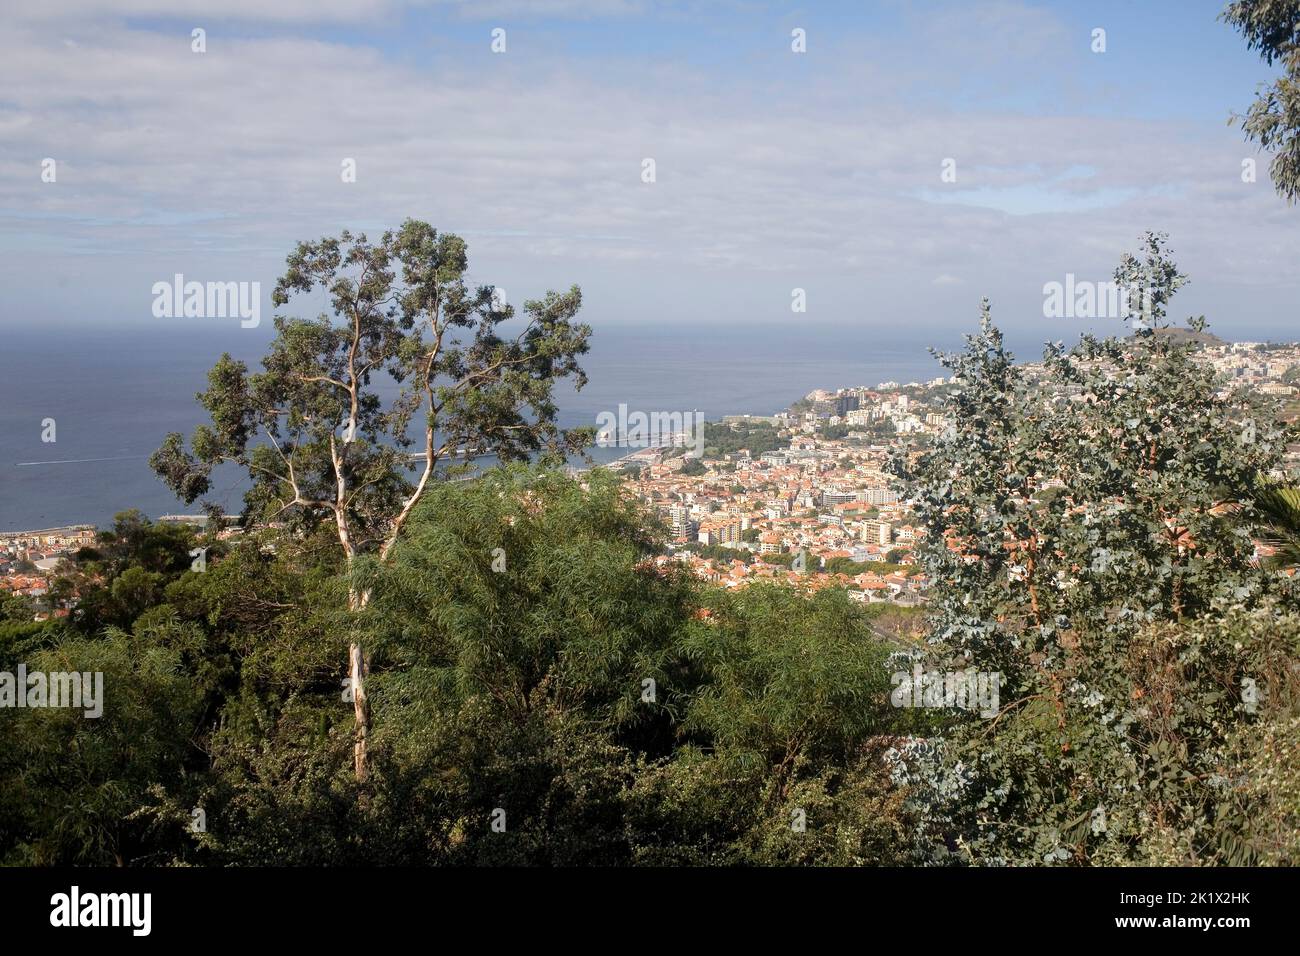 Los árboles en el jardín botánico y la ciudad de Funchal Madeira en la distancia Foto de stock